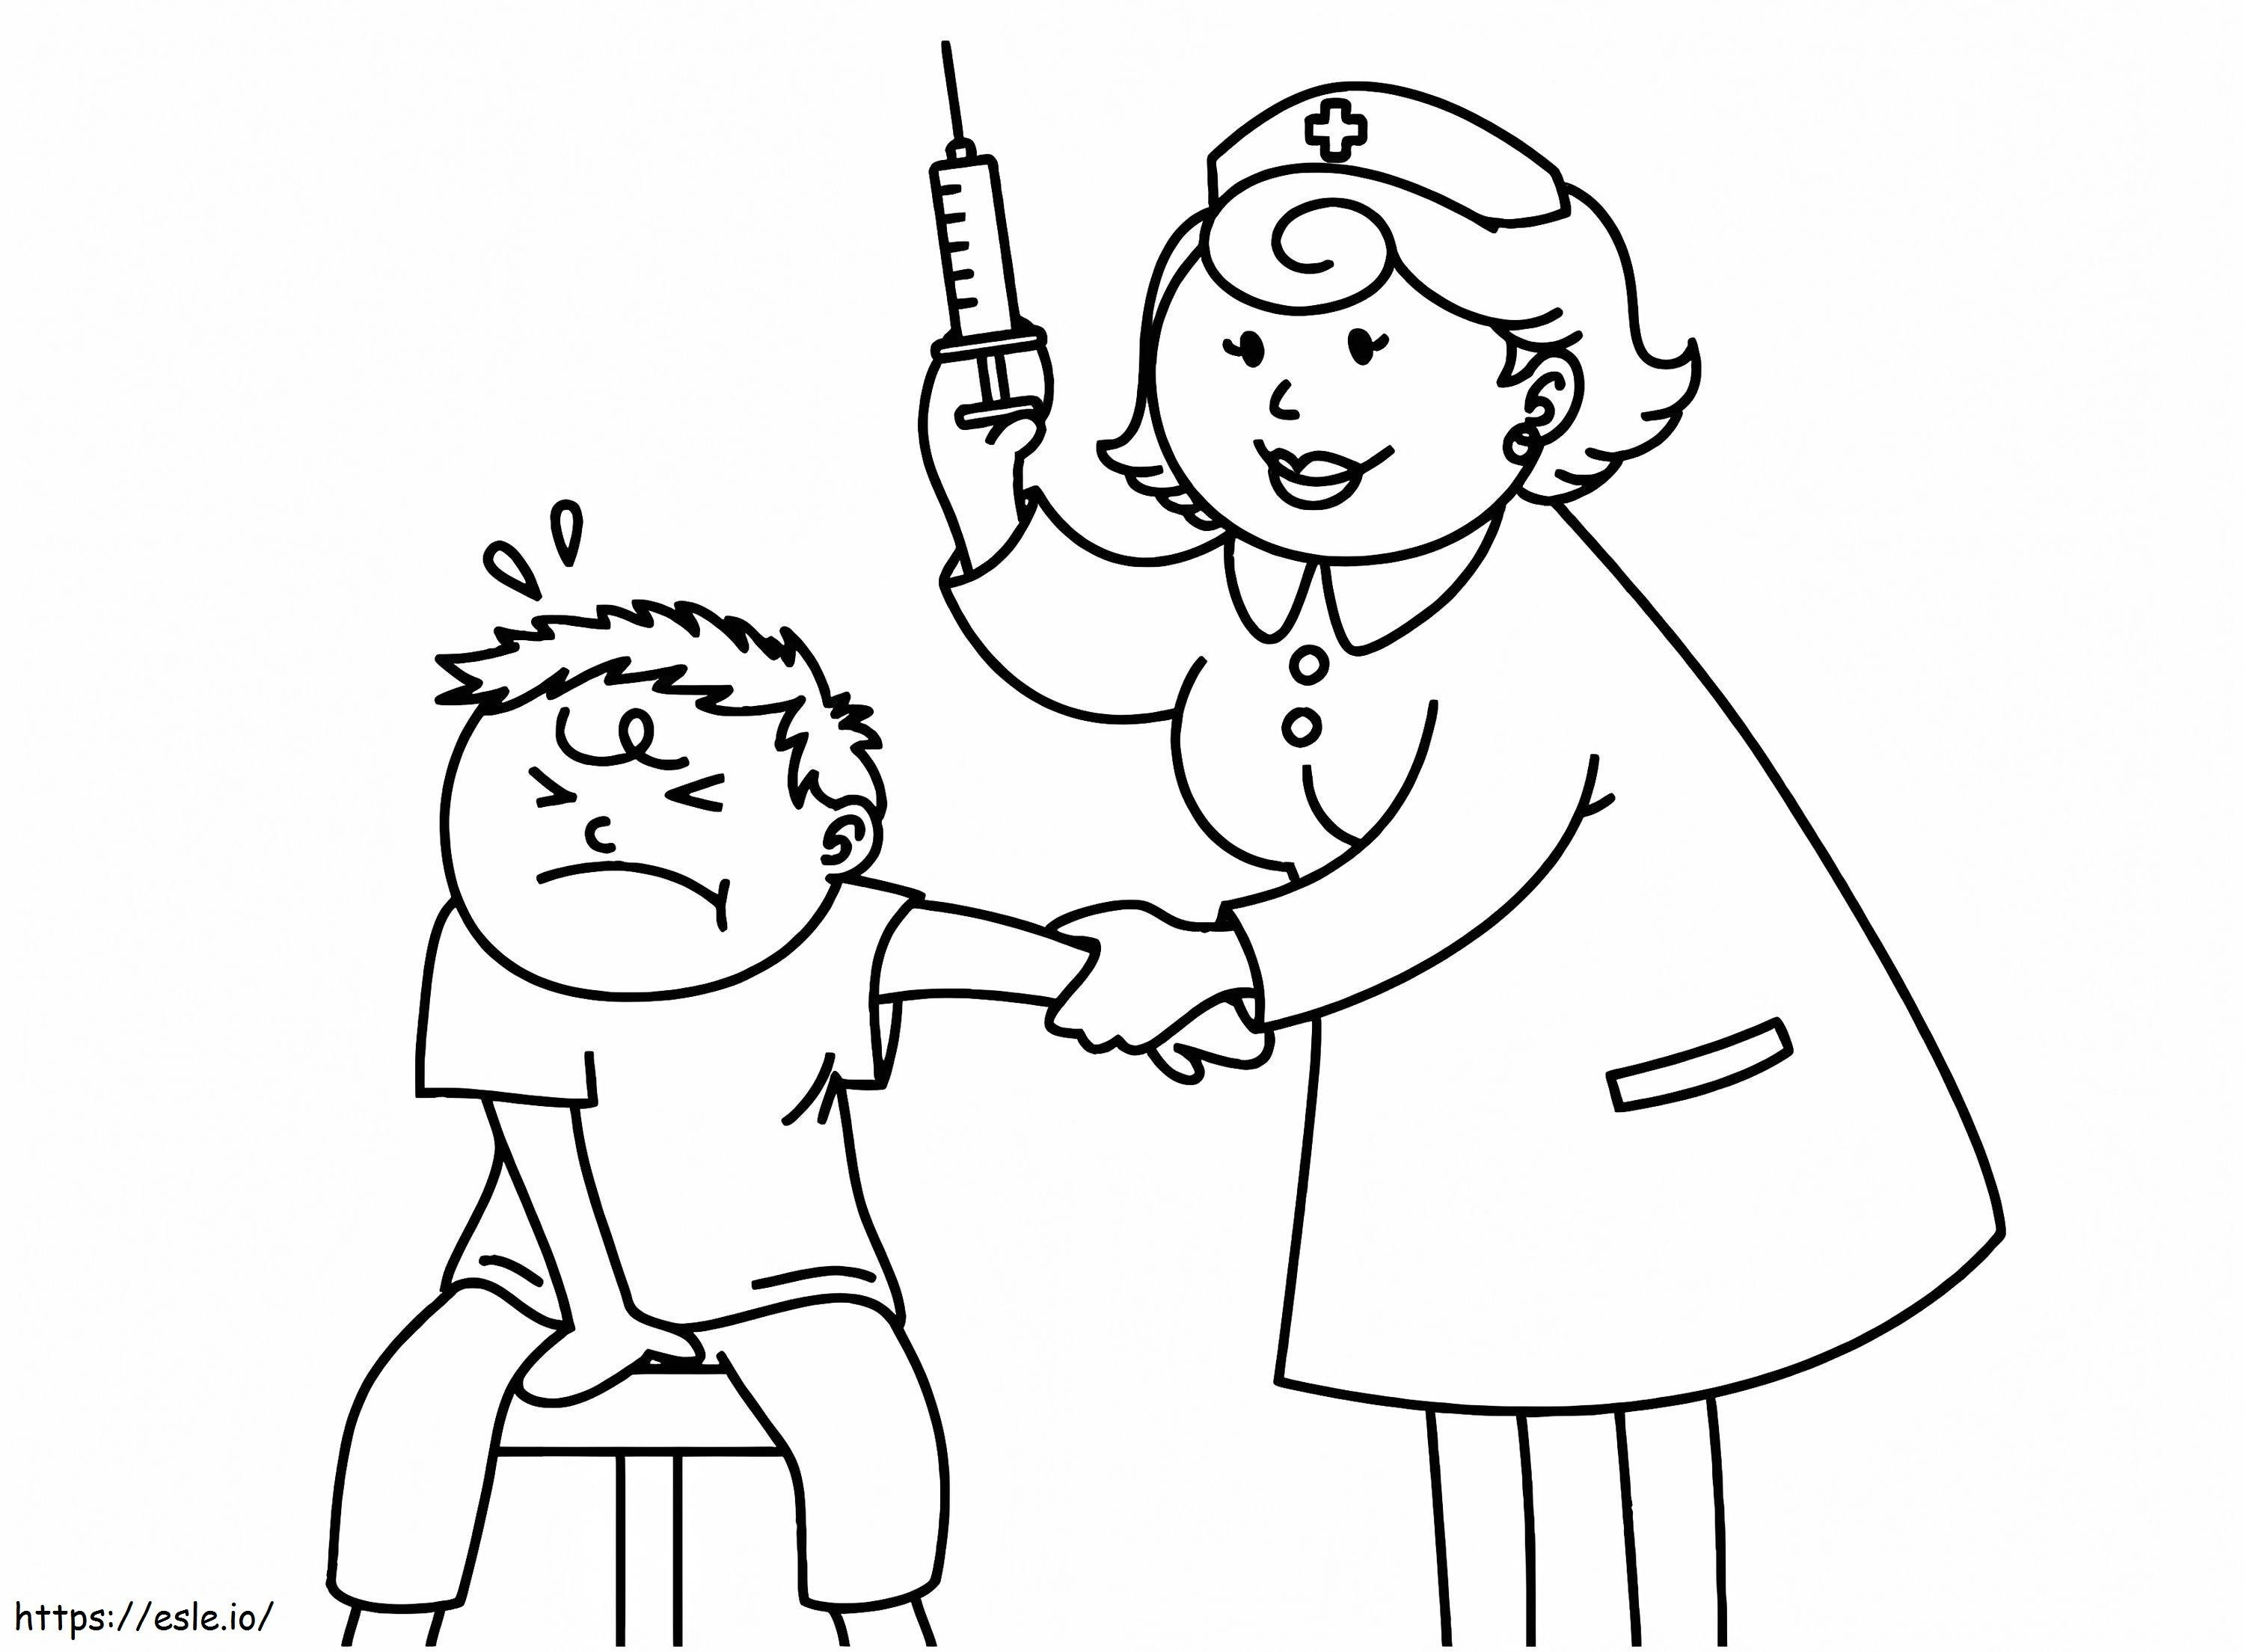 Der Patient hat Angst vor der Injektion ausmalbilder